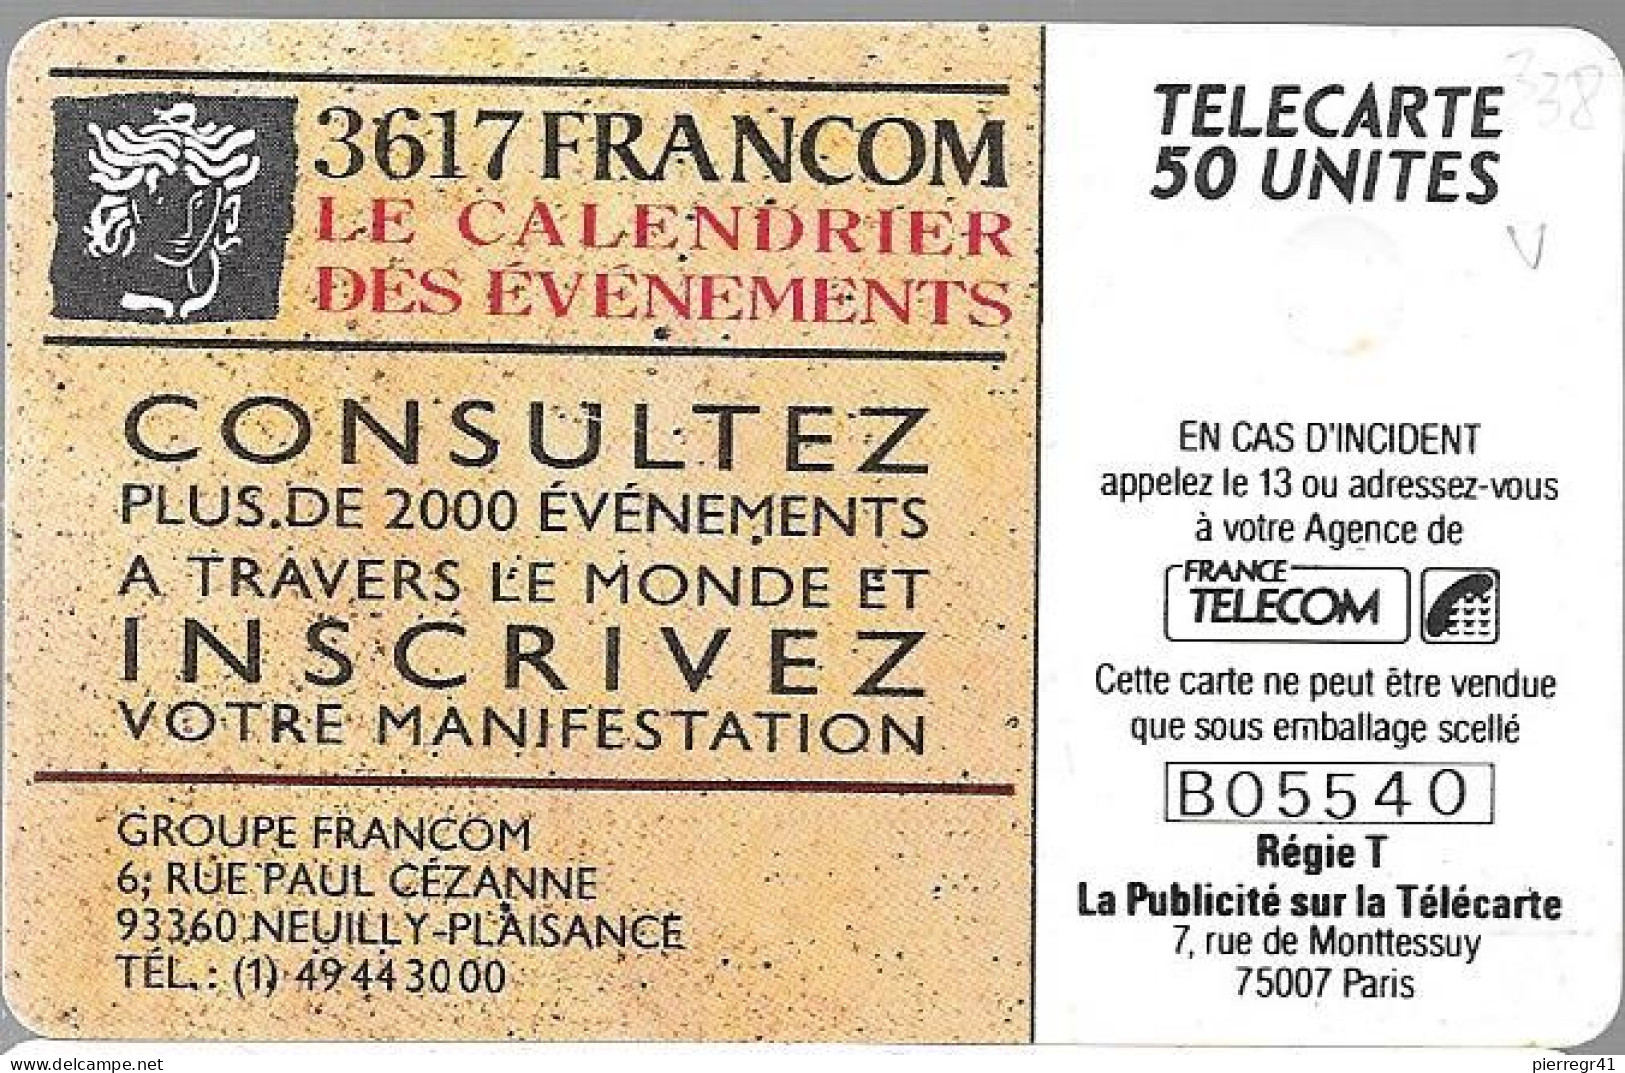 CARTE-PRIVEE-1990-D338-02/91-GEMA-3617 FRANCOM-Minitel Evénements-1000ex-R° Laqué-Utilisé-TBE/LUXE - Privat